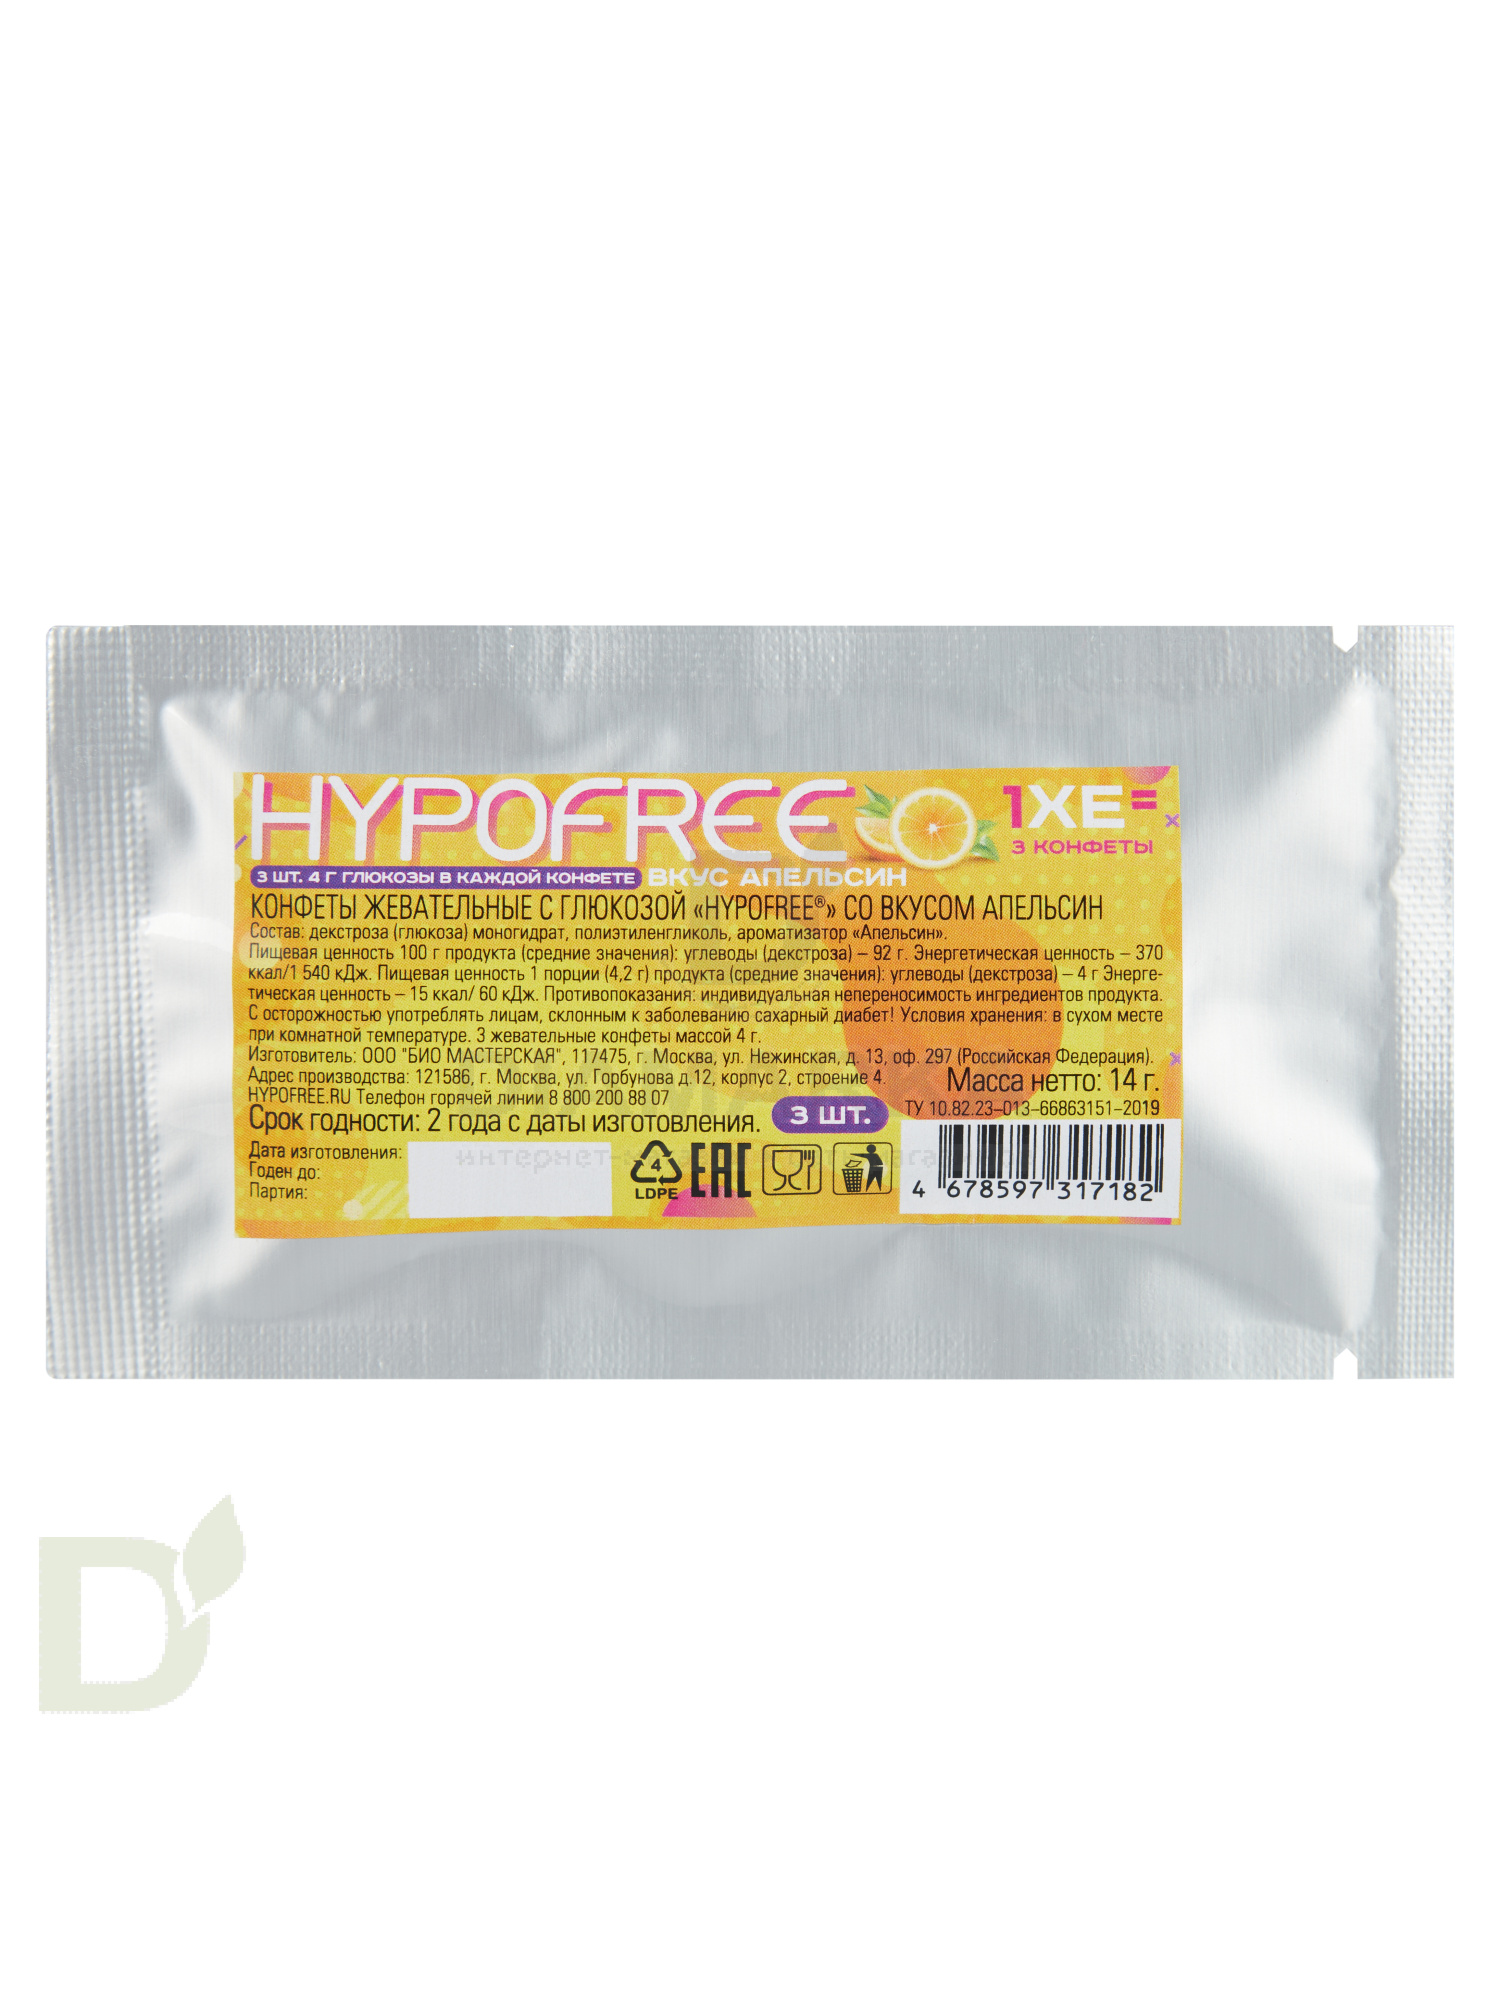 Конфеты таблетированные HYPOFREE 3шт по 4гр Апельсин, саше